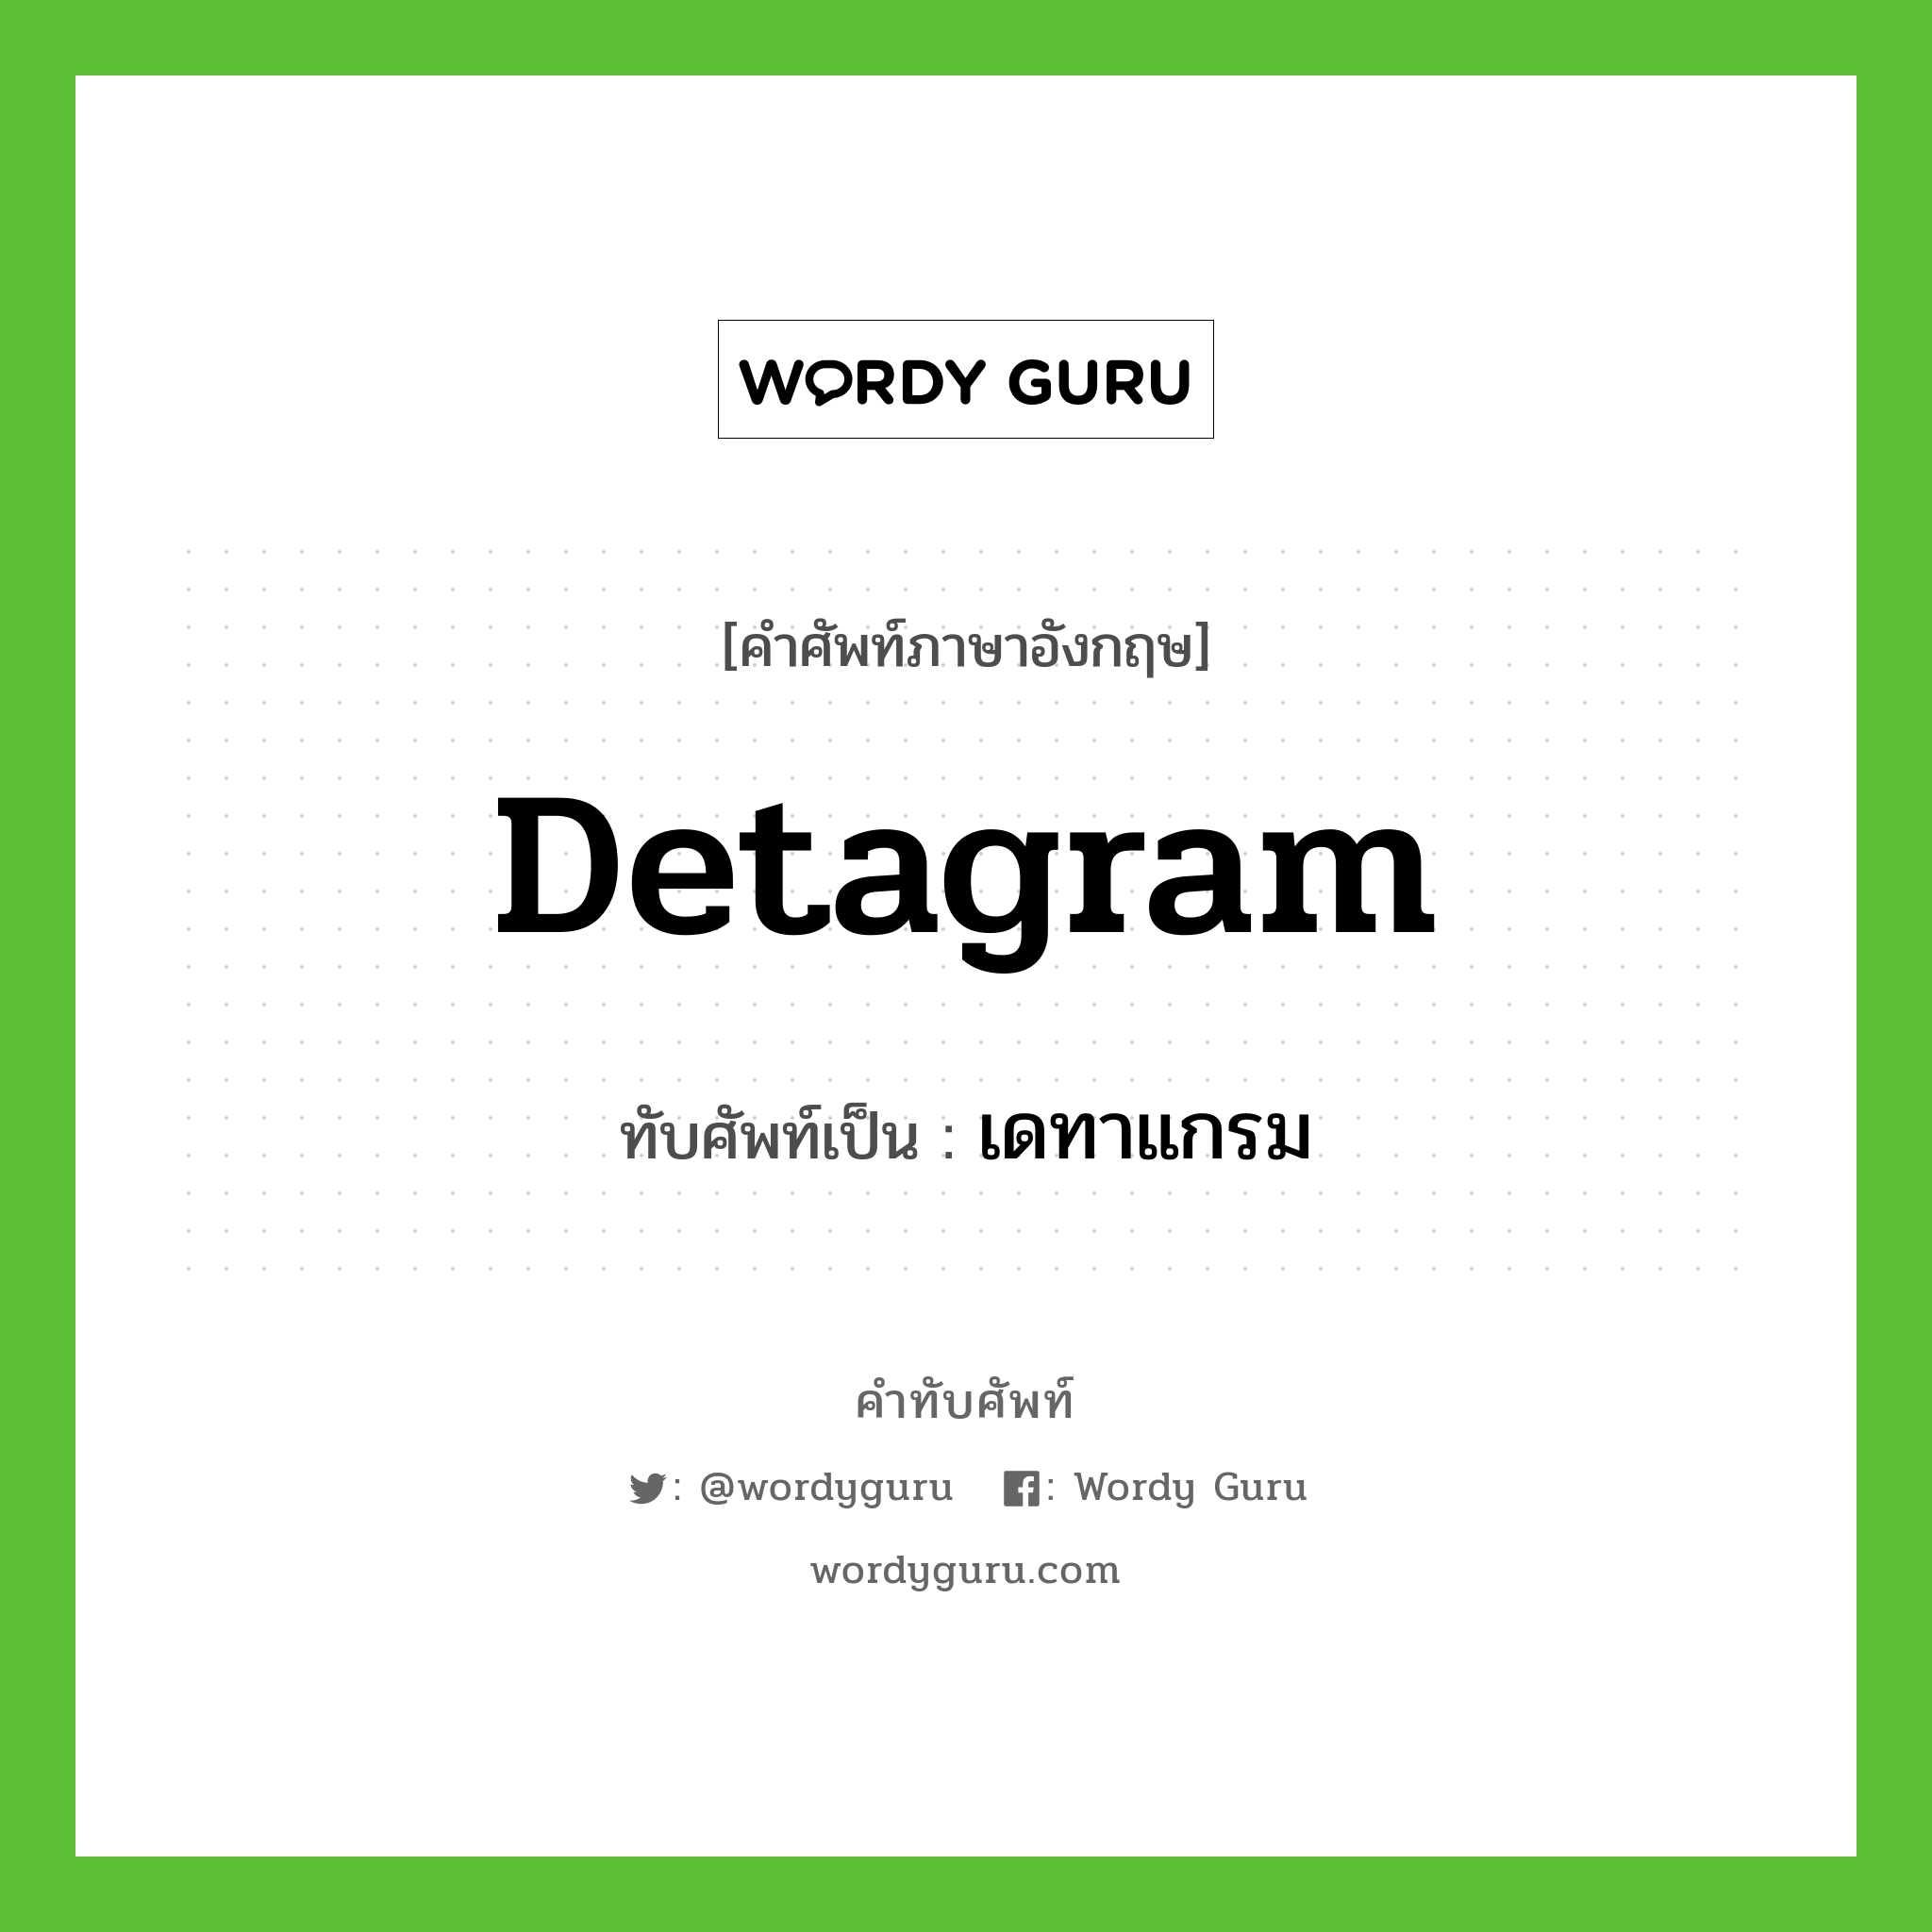 detagram เขียนเป็นคำไทยว่าอะไร?, คำศัพท์ภาษาอังกฤษ detagram ทับศัพท์เป็น เดทาแกรม